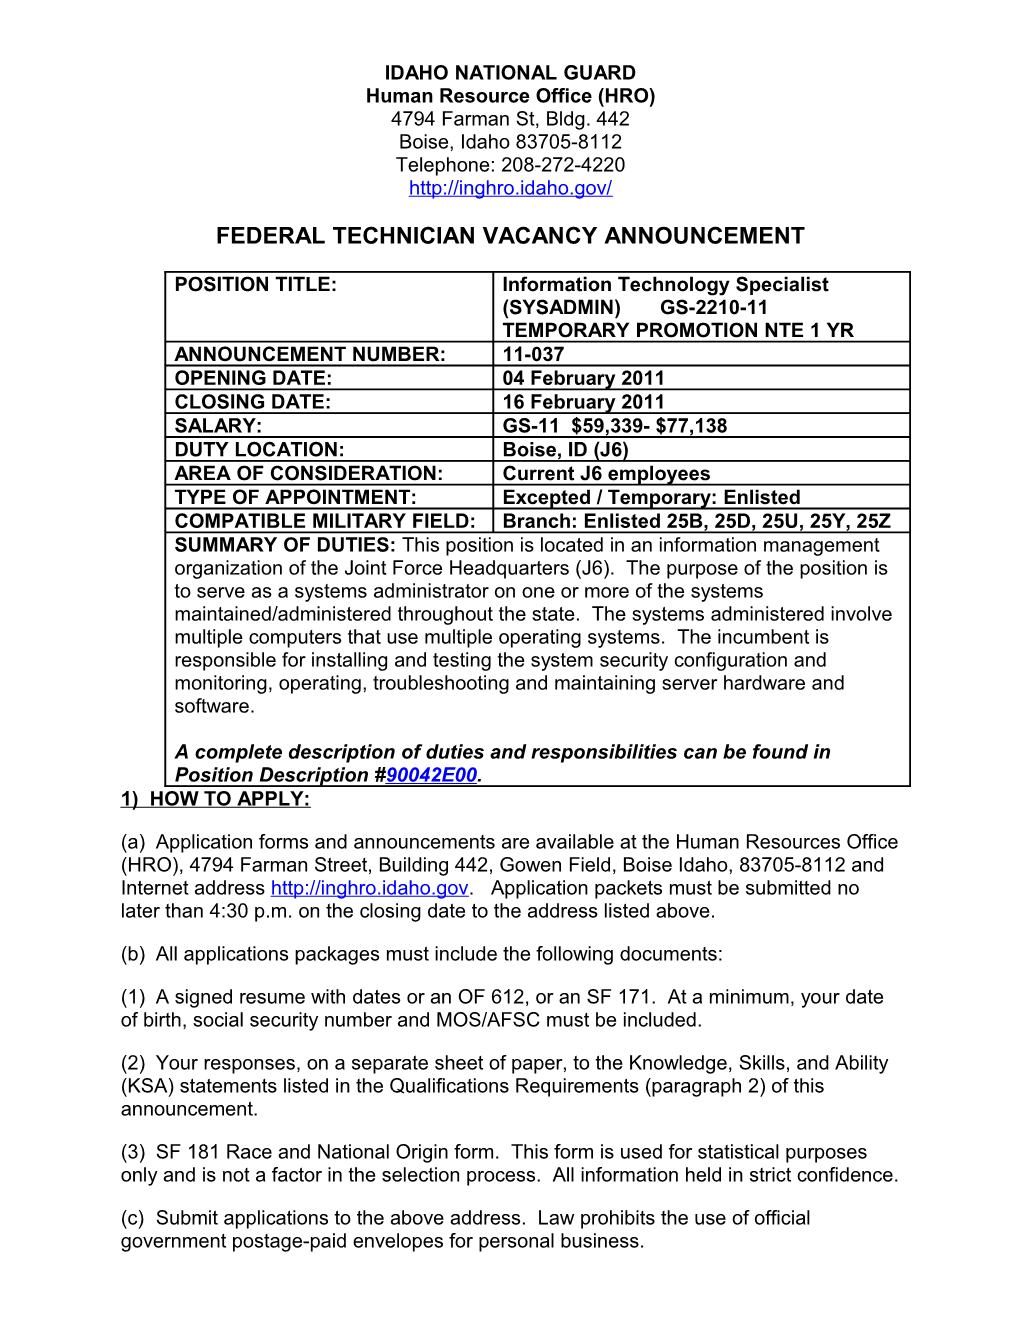 Technician Vacancy Announcement s10